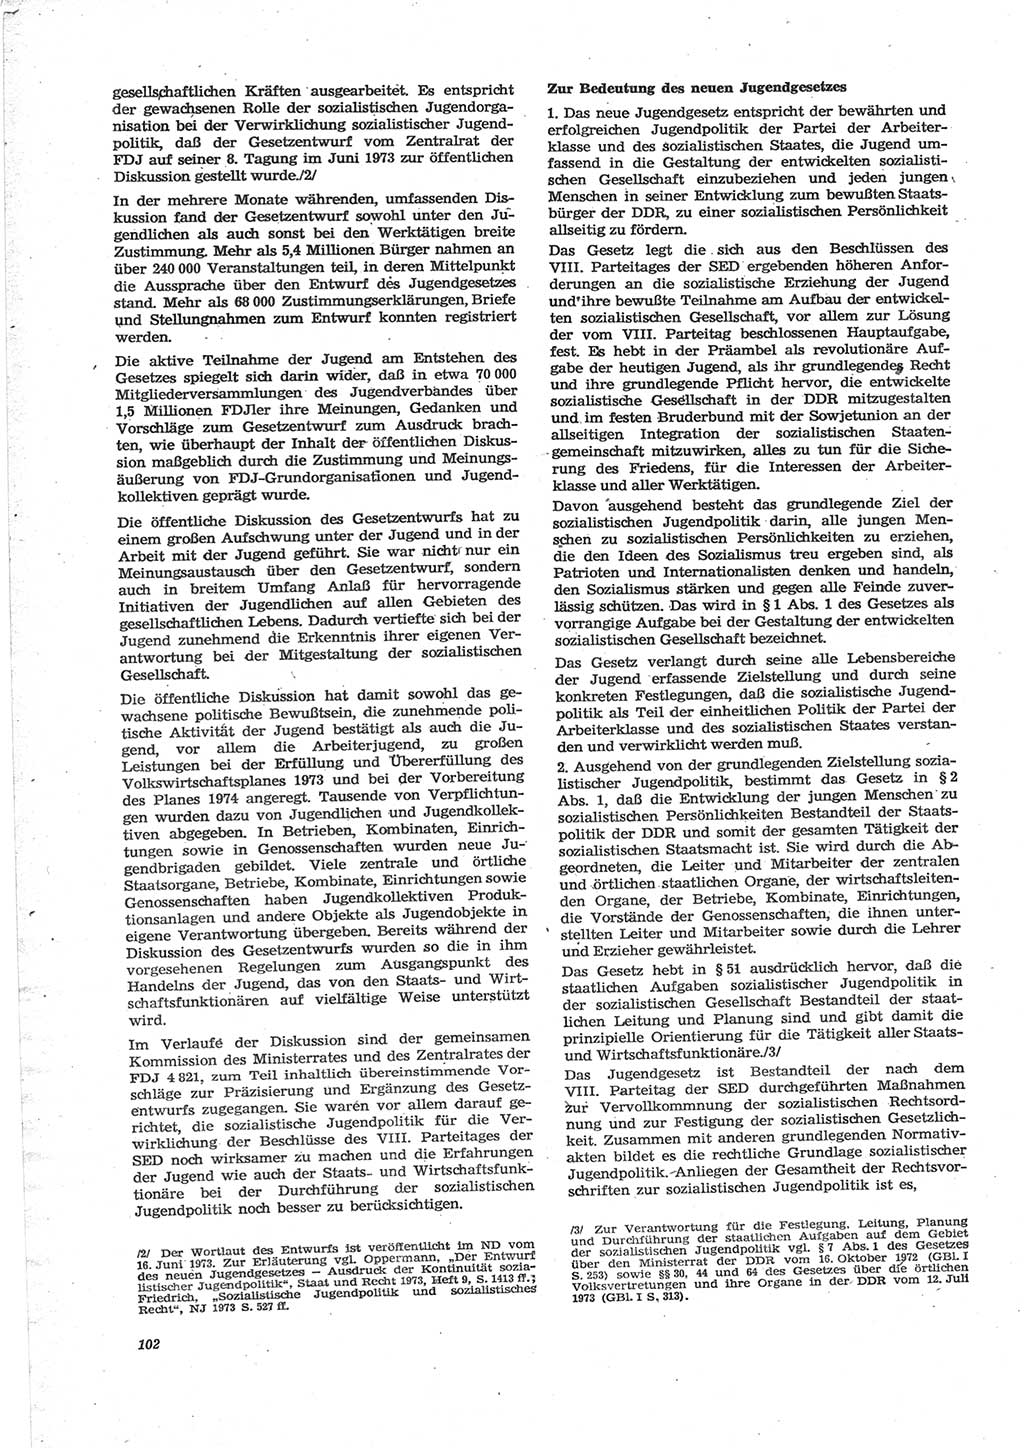 Neue Justiz (NJ), Zeitschrift für Recht und Rechtswissenschaft [Deutsche Demokratische Republik (DDR)], 28. Jahrgang 1974, Seite 102 (NJ DDR 1974, S. 102)